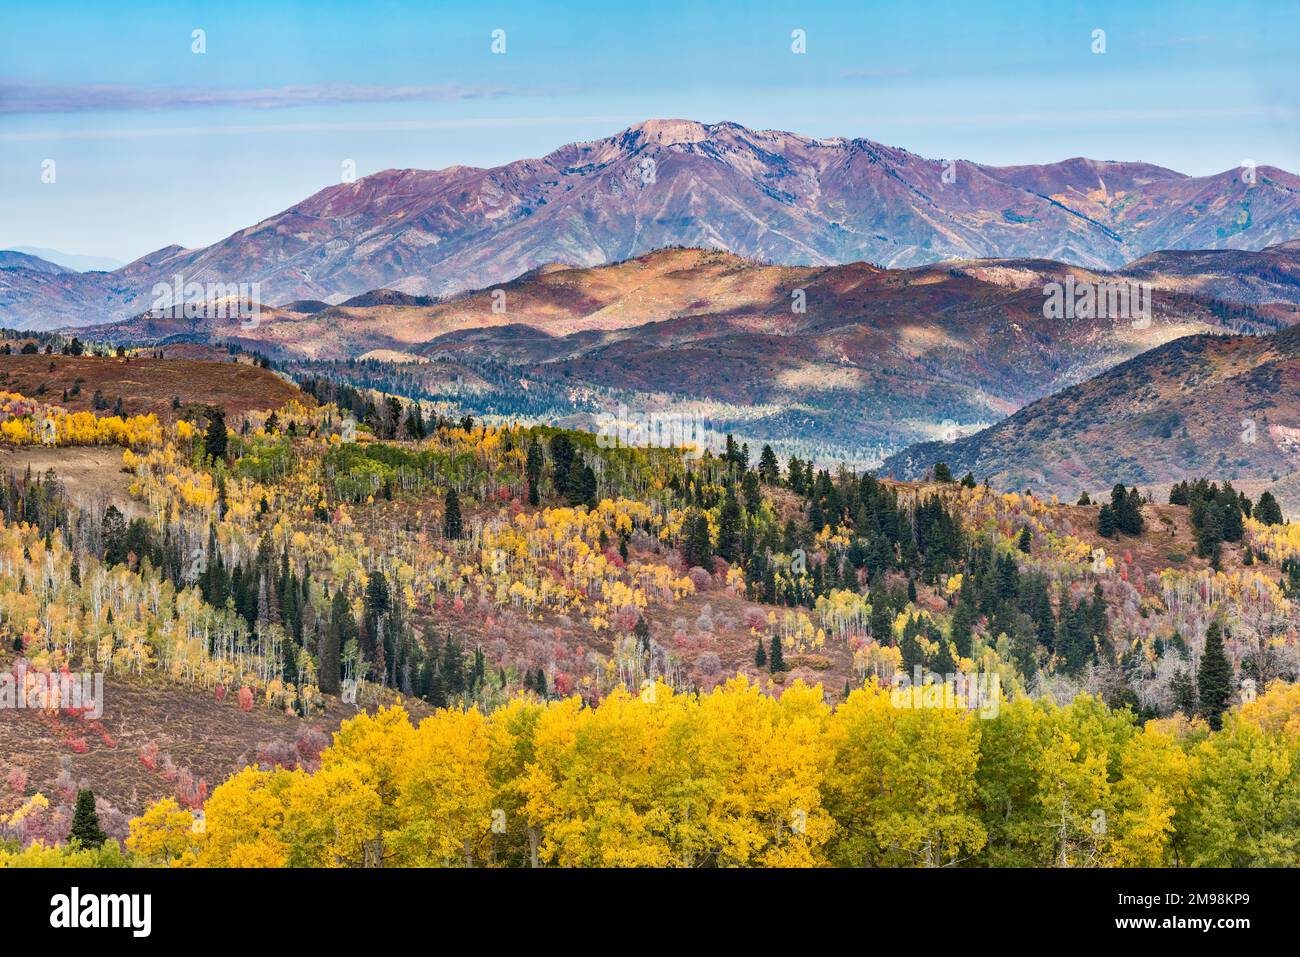 Chaîne de montagnes au plateau de Wasatch, vue depuis Skyline Drive Scenic Drive, saison d'automne, forêt nationale de Manti la Sal, Utah, États-Unis Banque D'Images